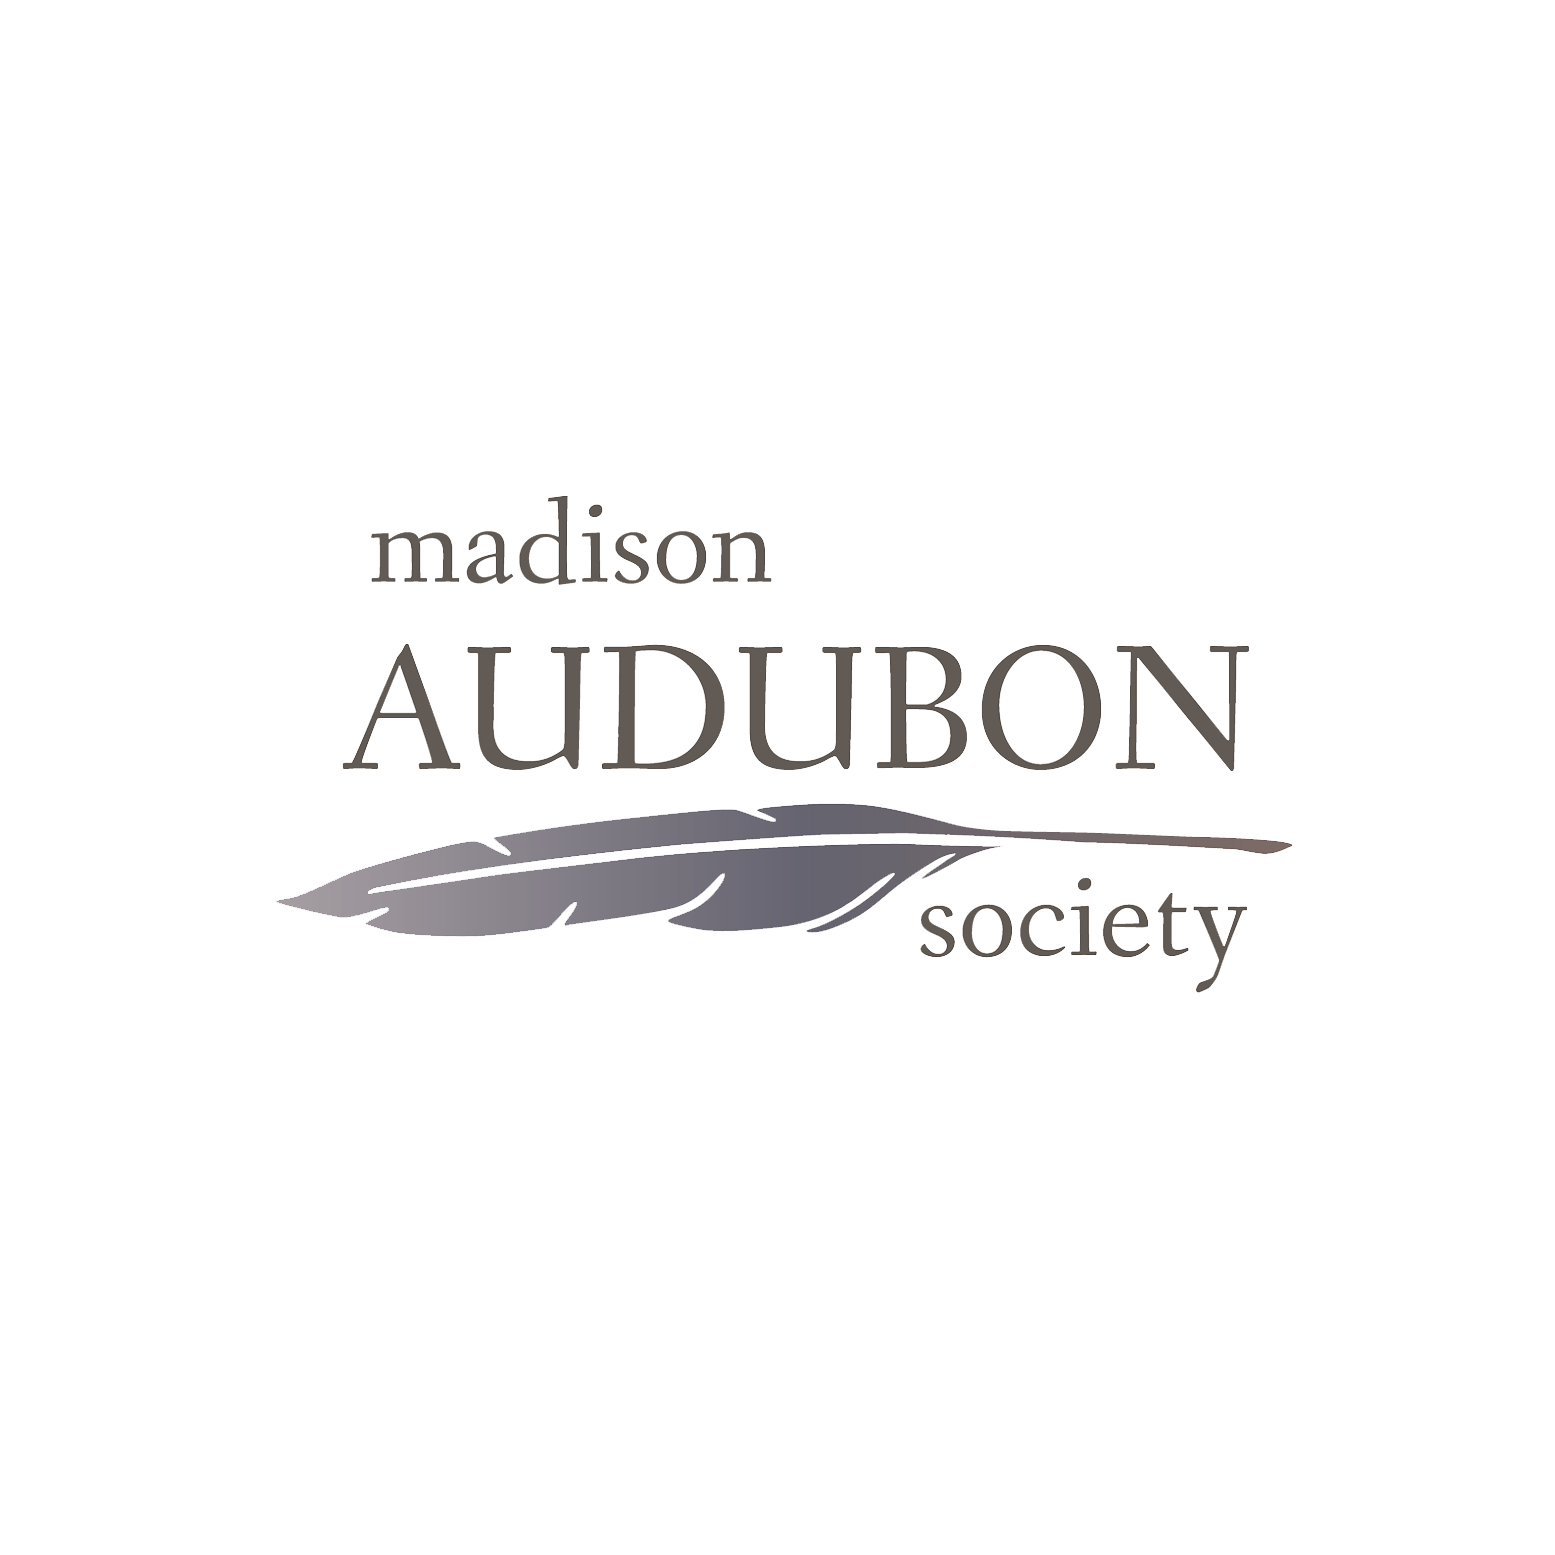 Madison Audubon Society logo